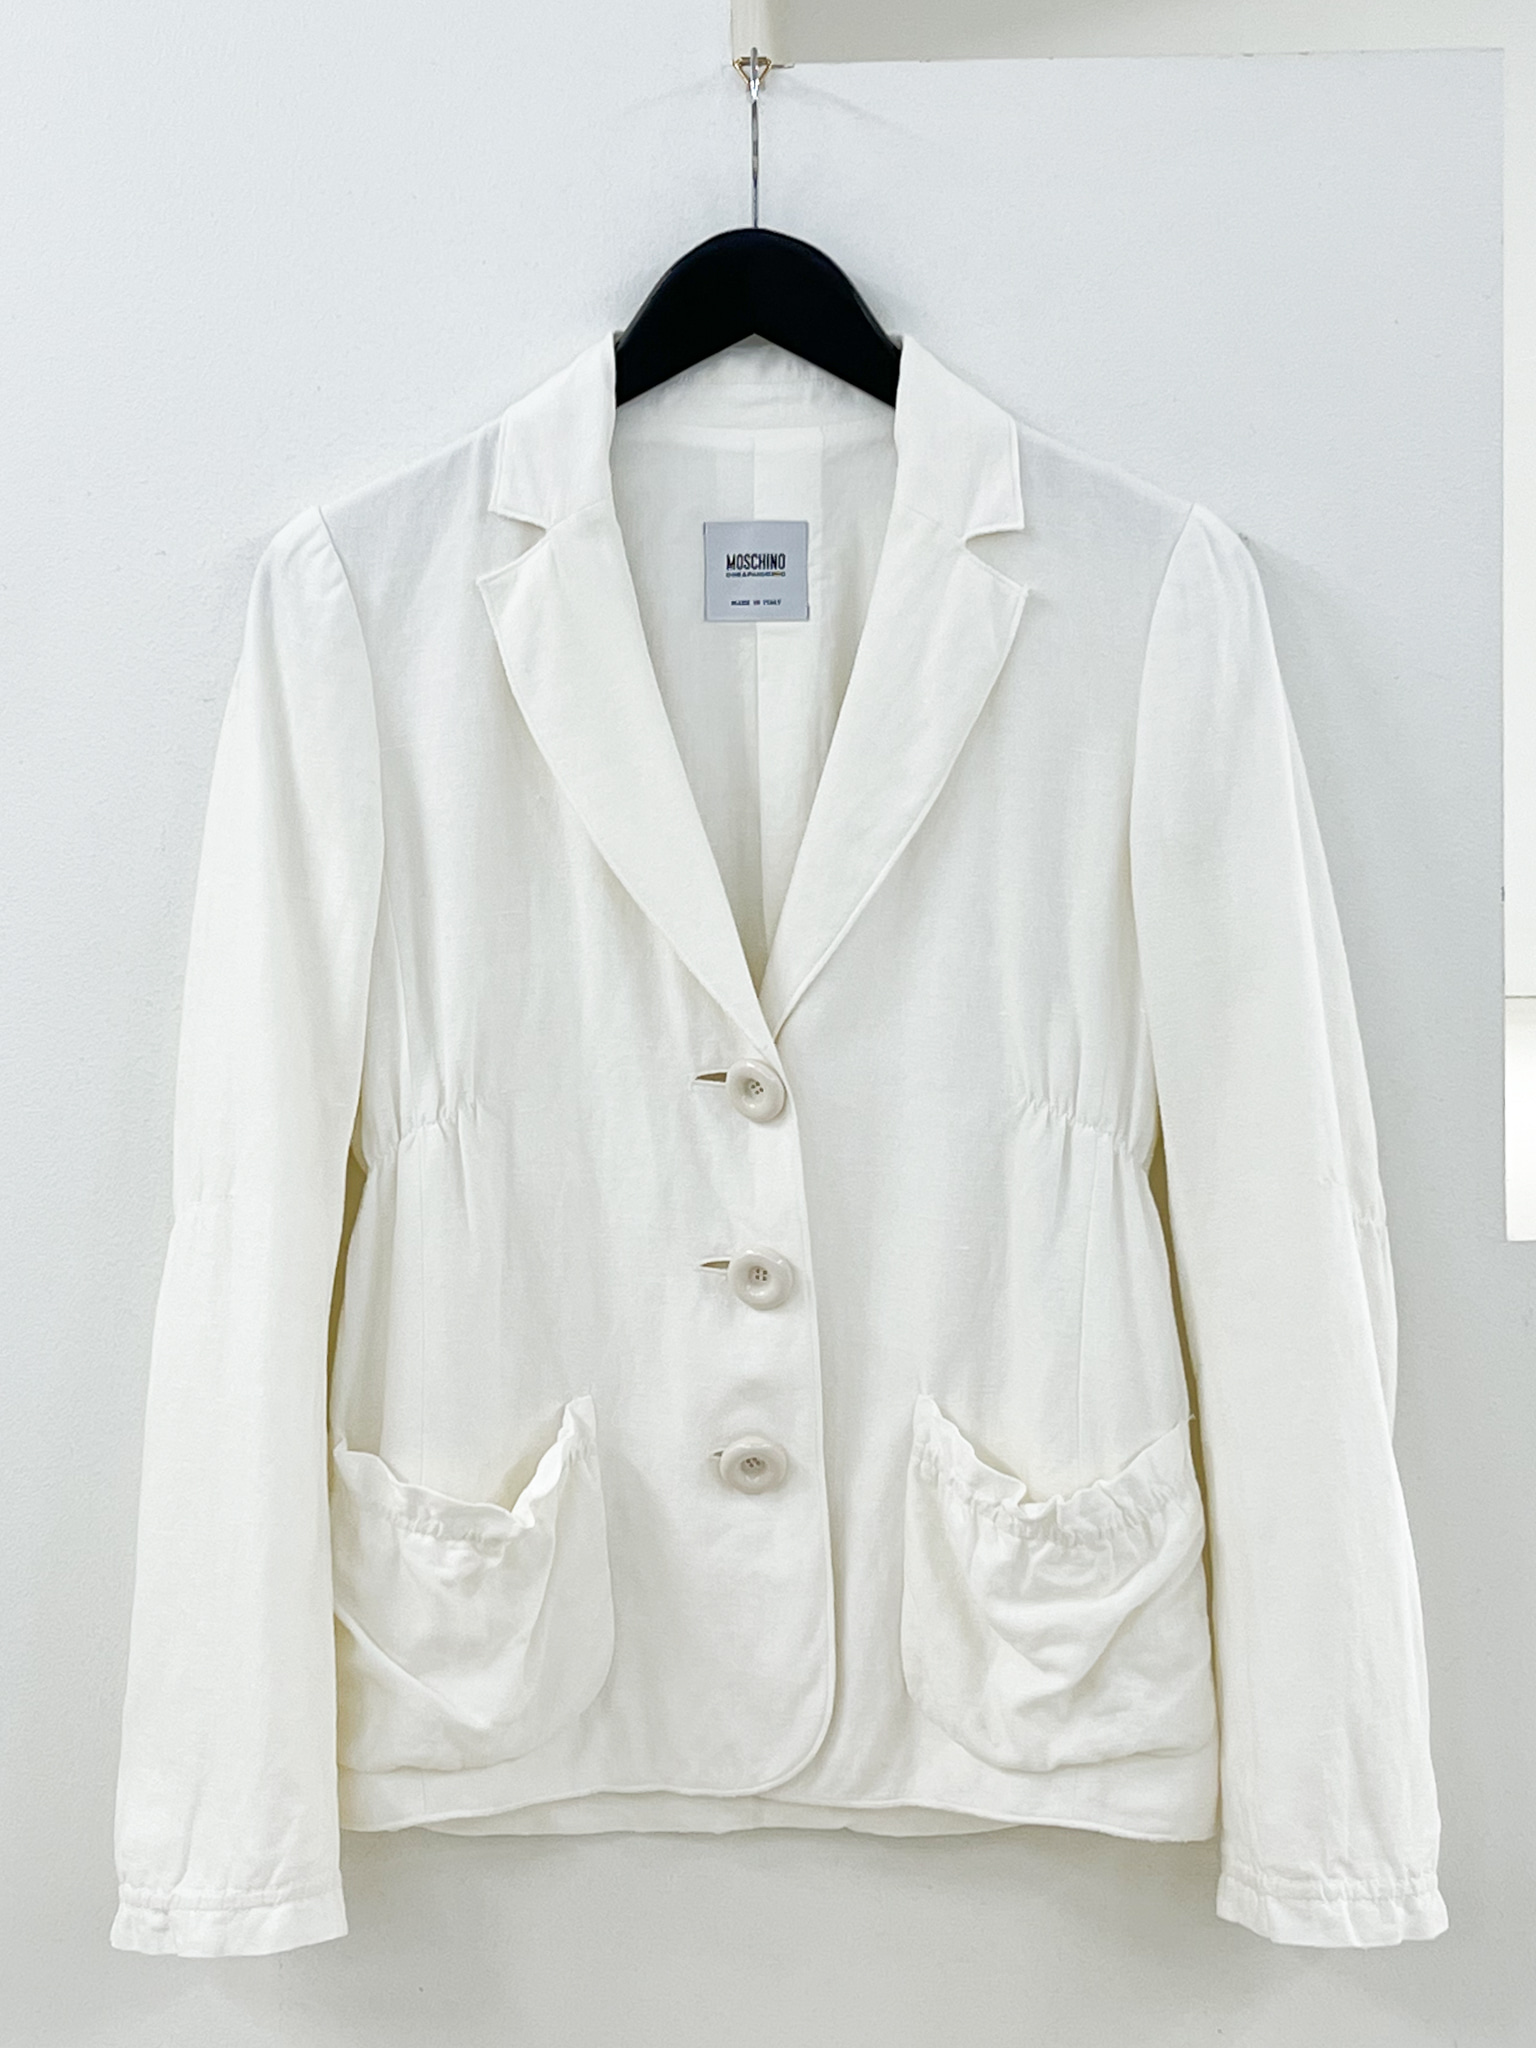 MOSCHINO white jacket